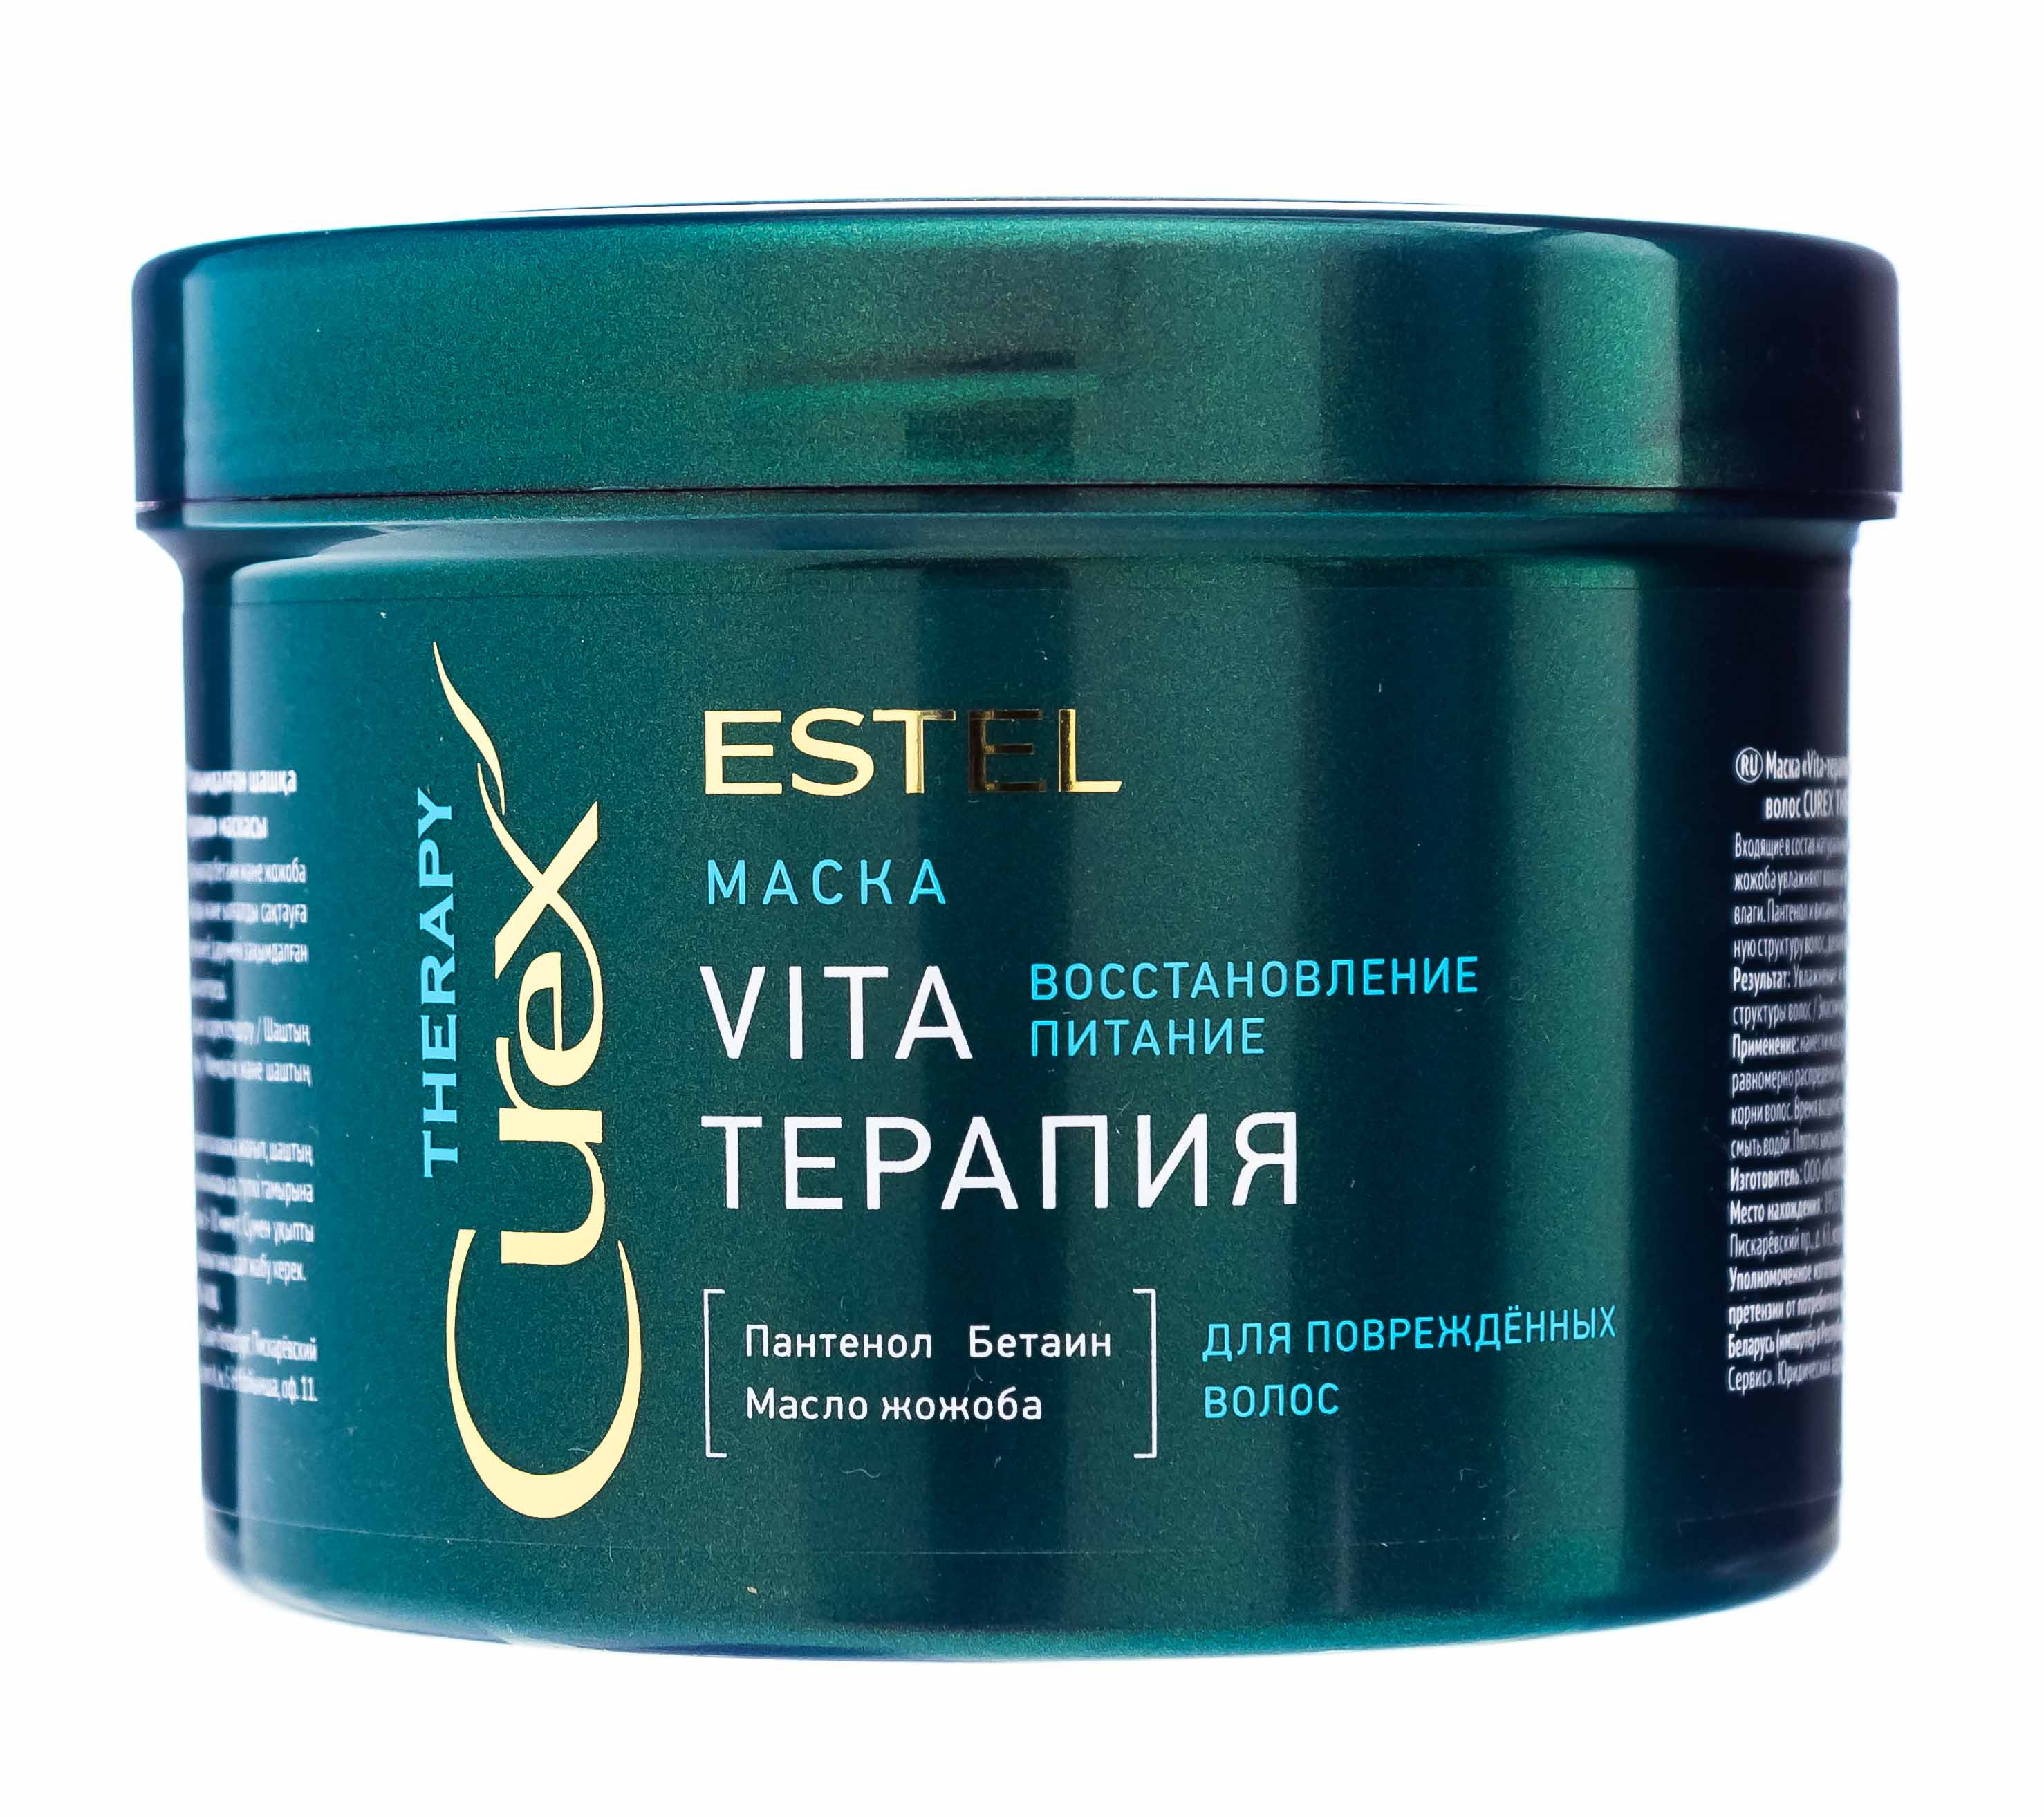 Маска терапия для волос. Маска Vita - терапия Estel Curex Therapy для повреждённых волос 500. Маска "Vita-терапия" для повреждённых волос Curex Therapy (500 мл). Estel Curex маска Vita маска терапия.